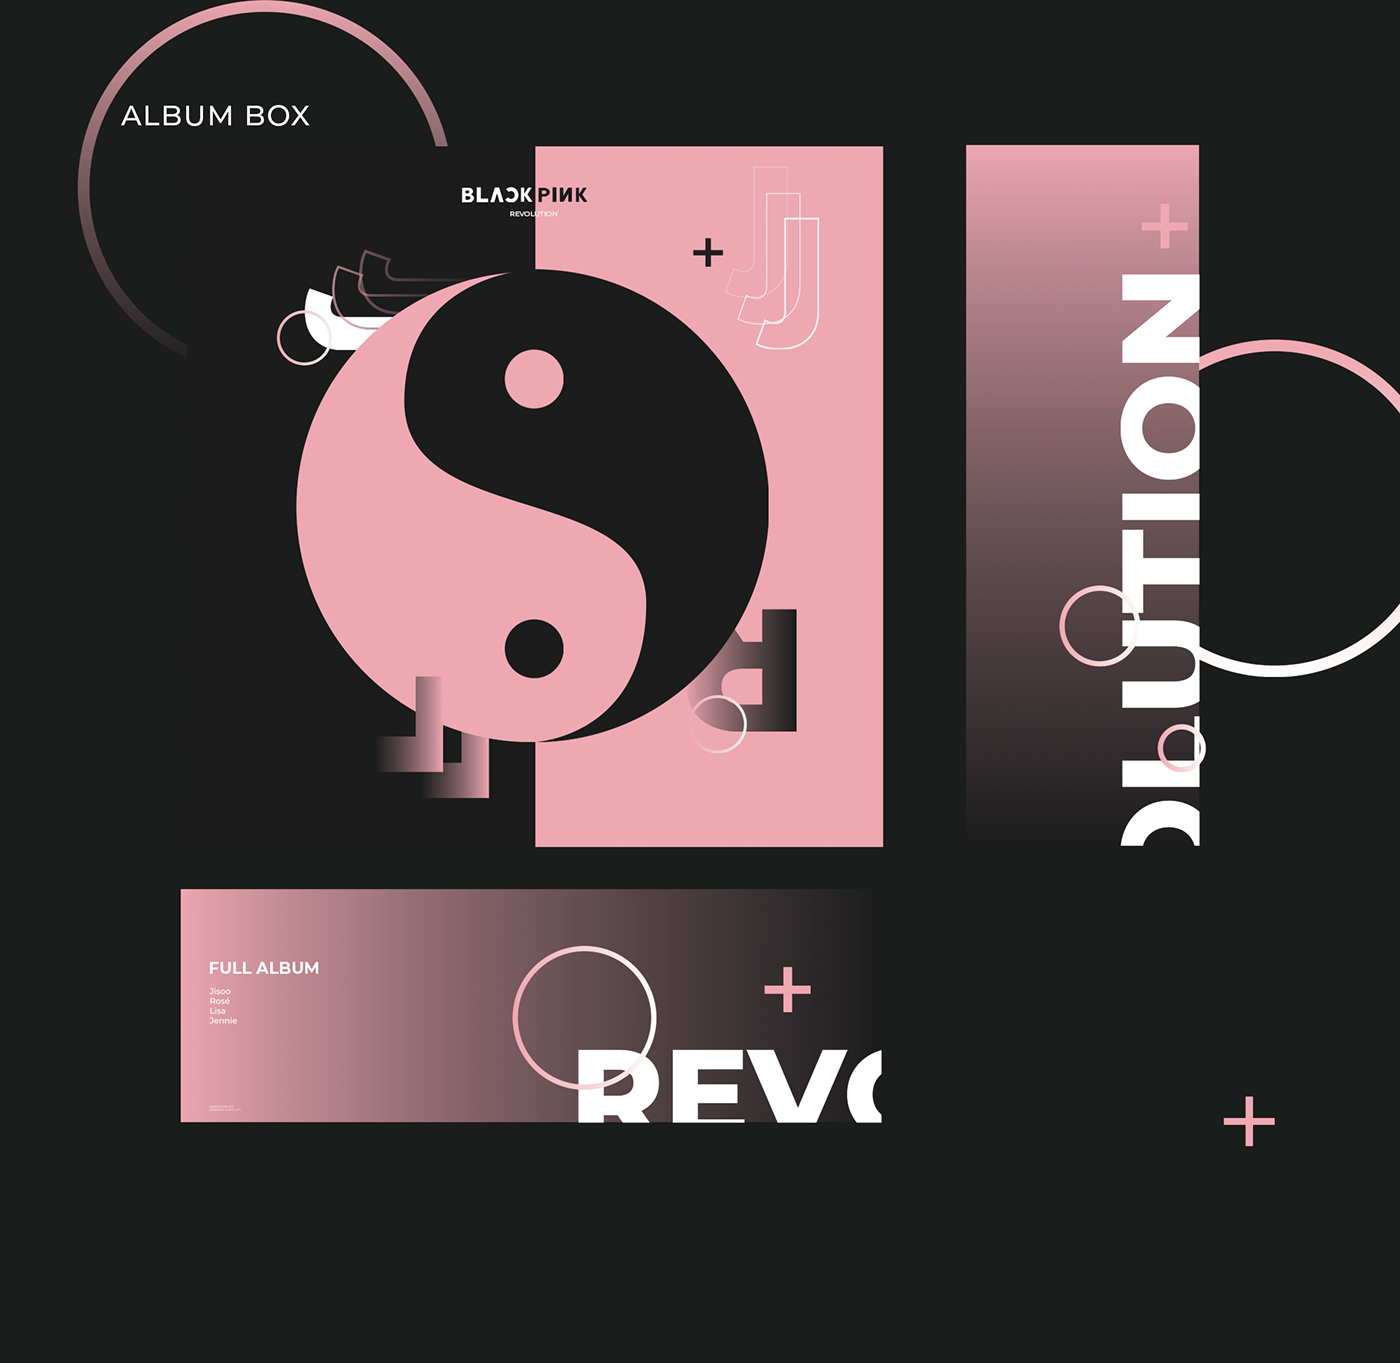 blackpink Design album Album design kpop design album concept music album preview album cd Packaging